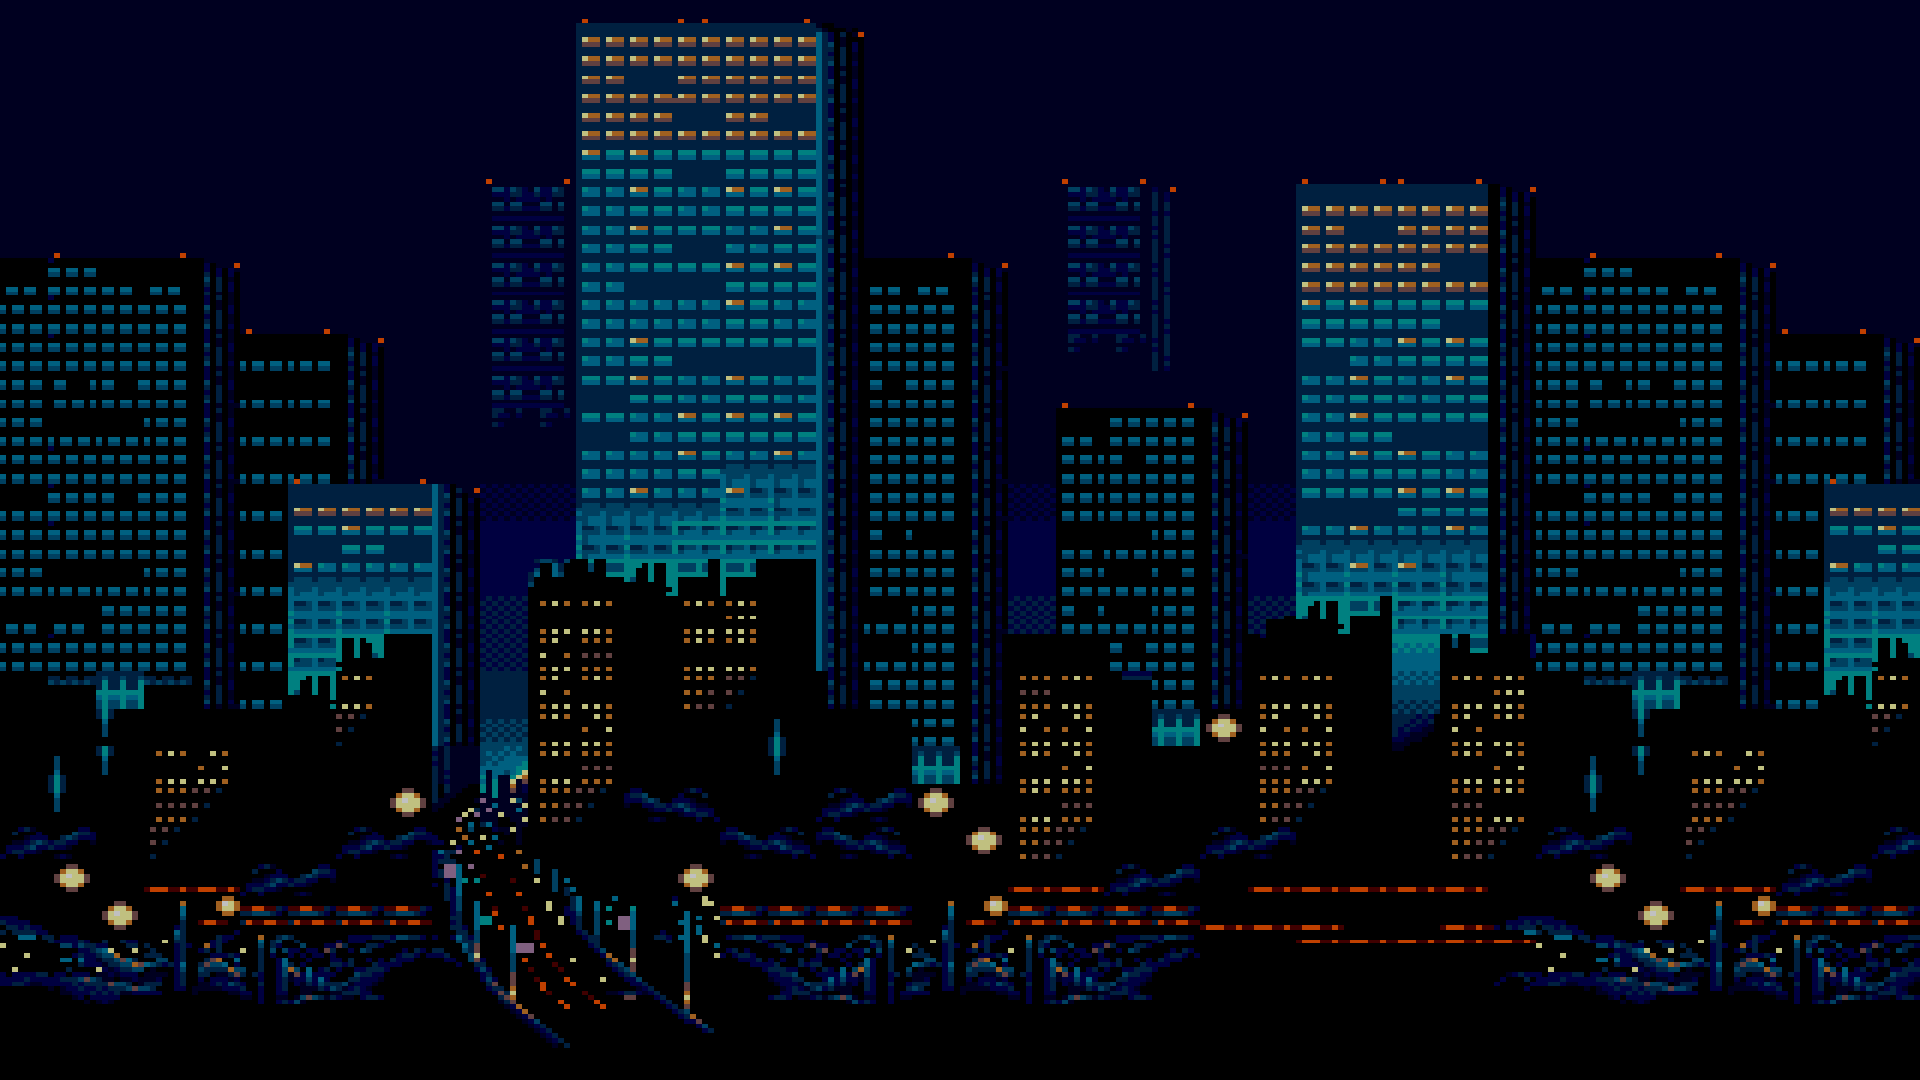 Pixel City Wallpapers - Top Free Pixel